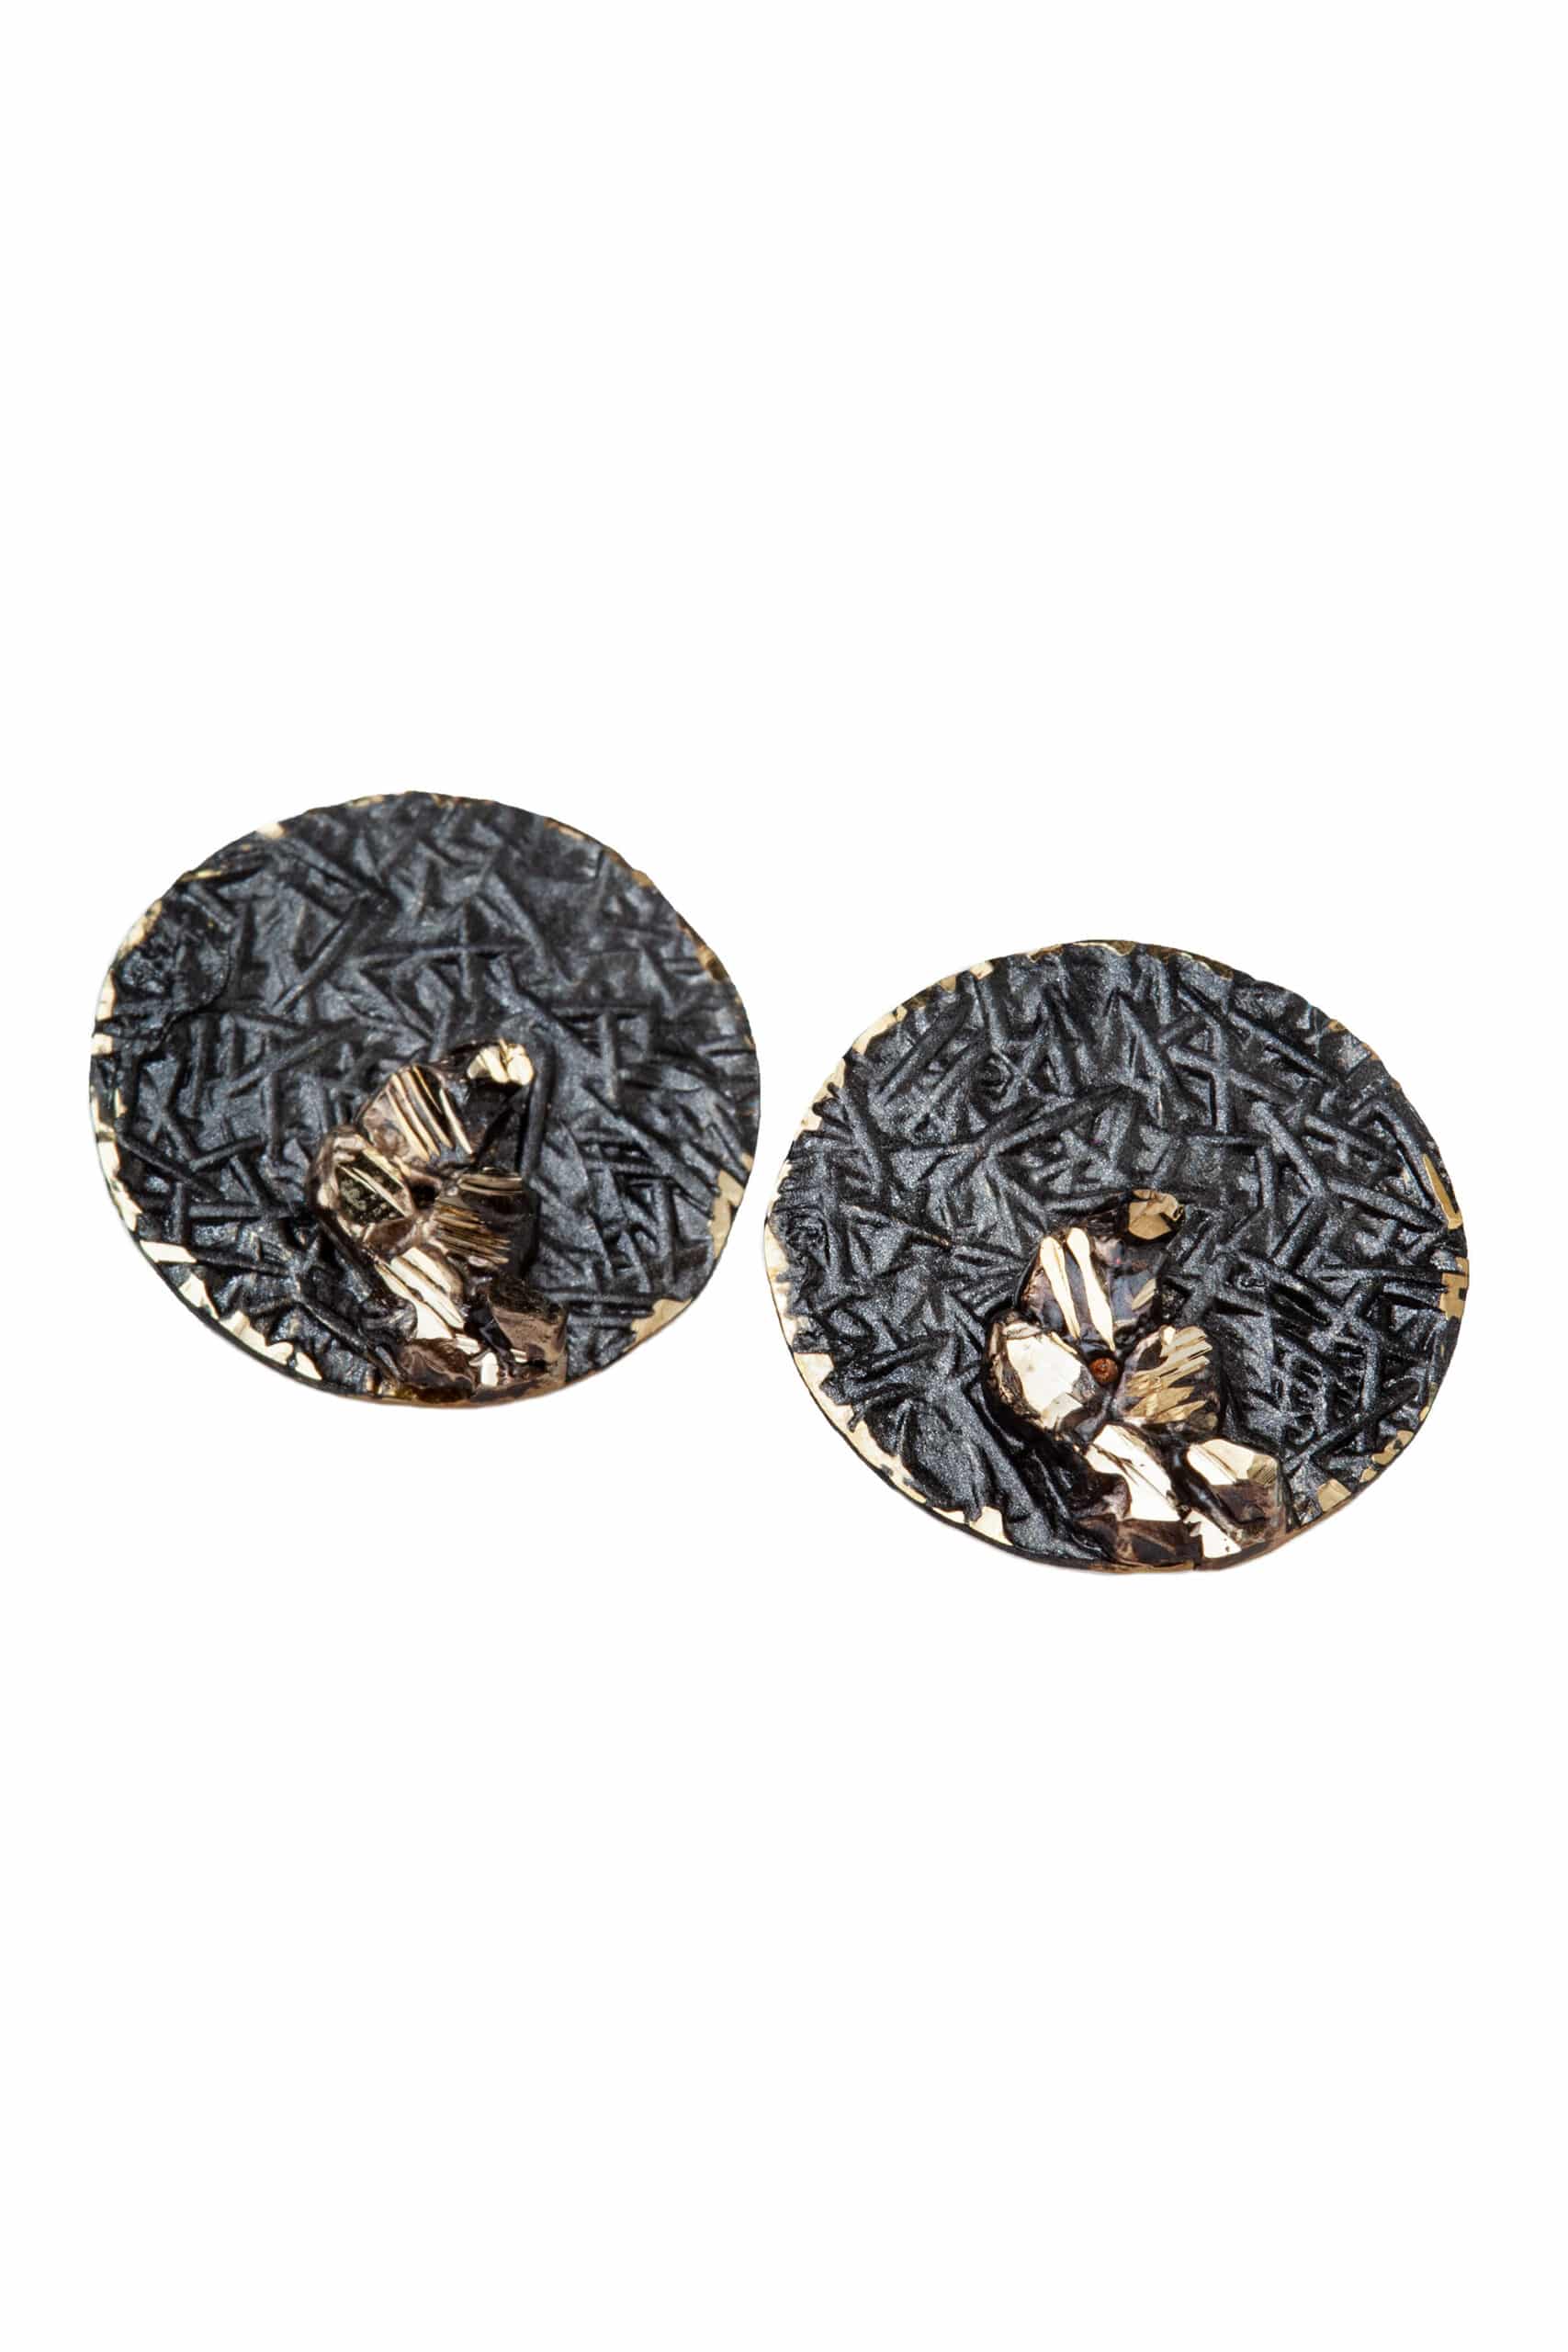 Στρογγυλά καρφωτά σκουλαρίκια από ορείχαλκο με μαύρη και χρυσή αντικέ χρωματιστή πατίνα gallery 1